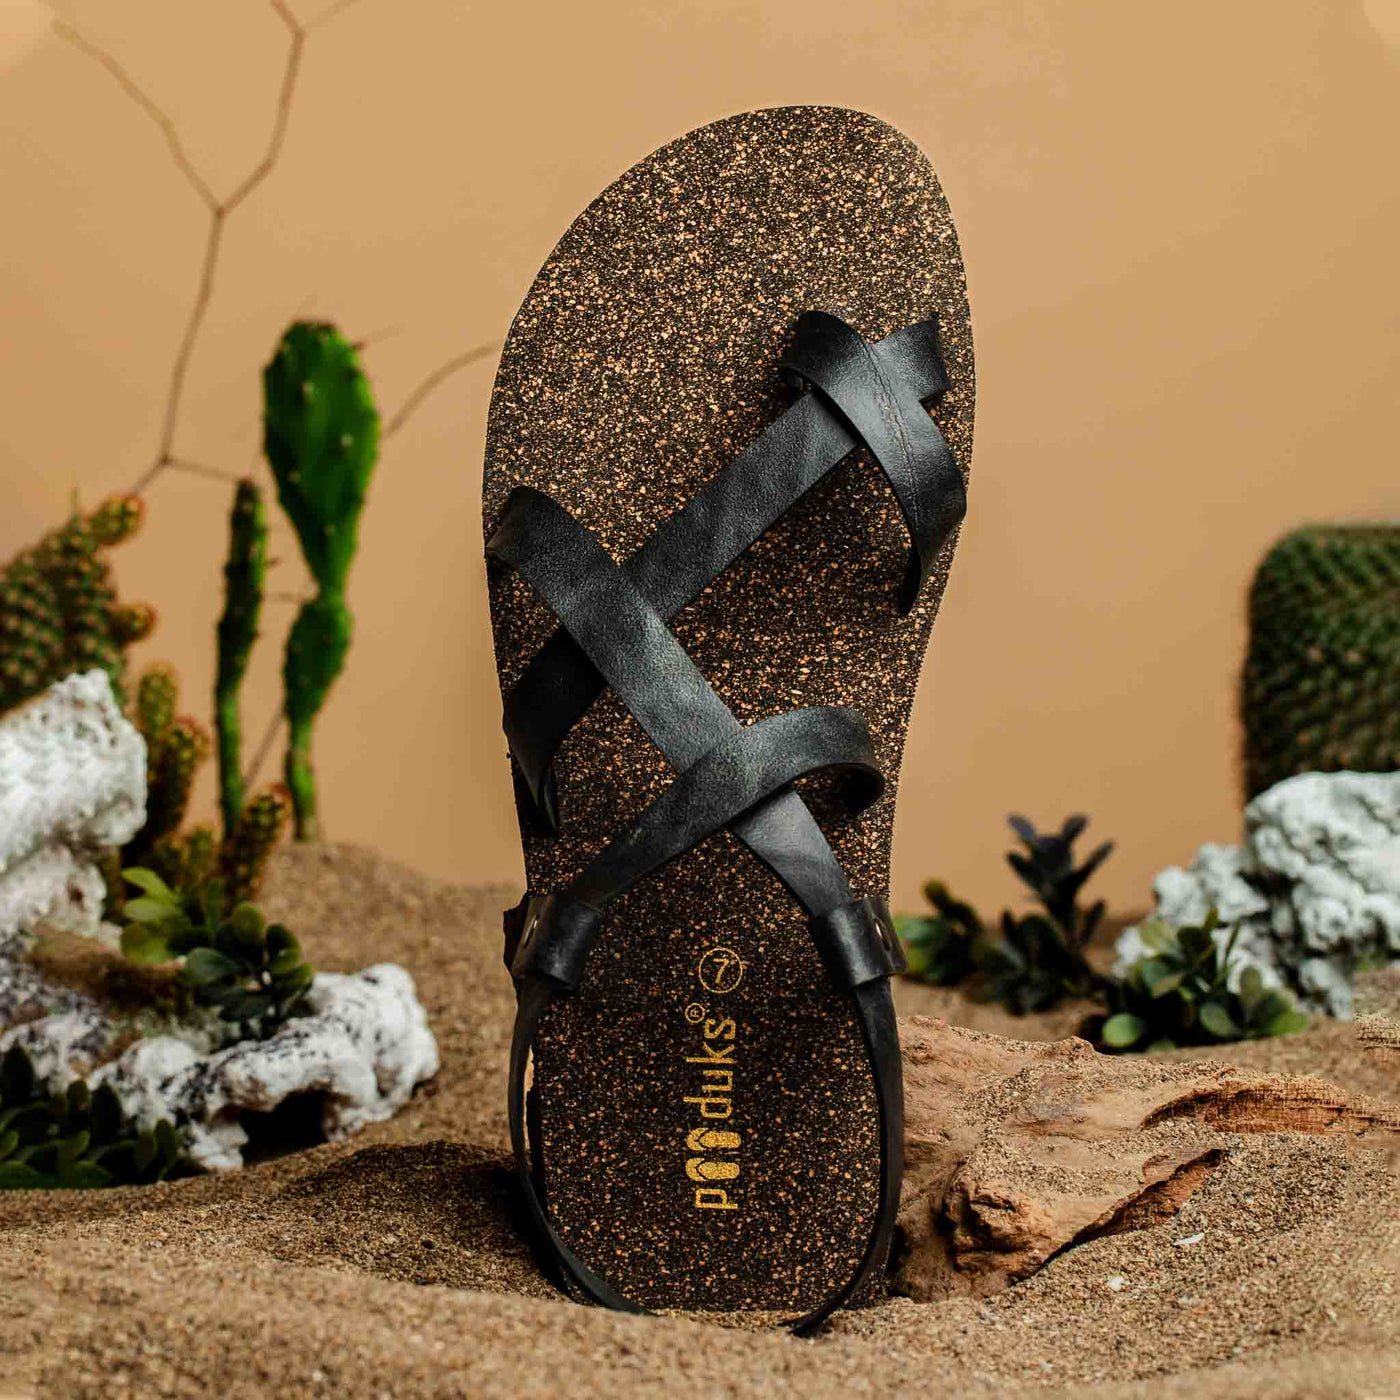 Tro Slingback Cork Sandals for Men (Black)